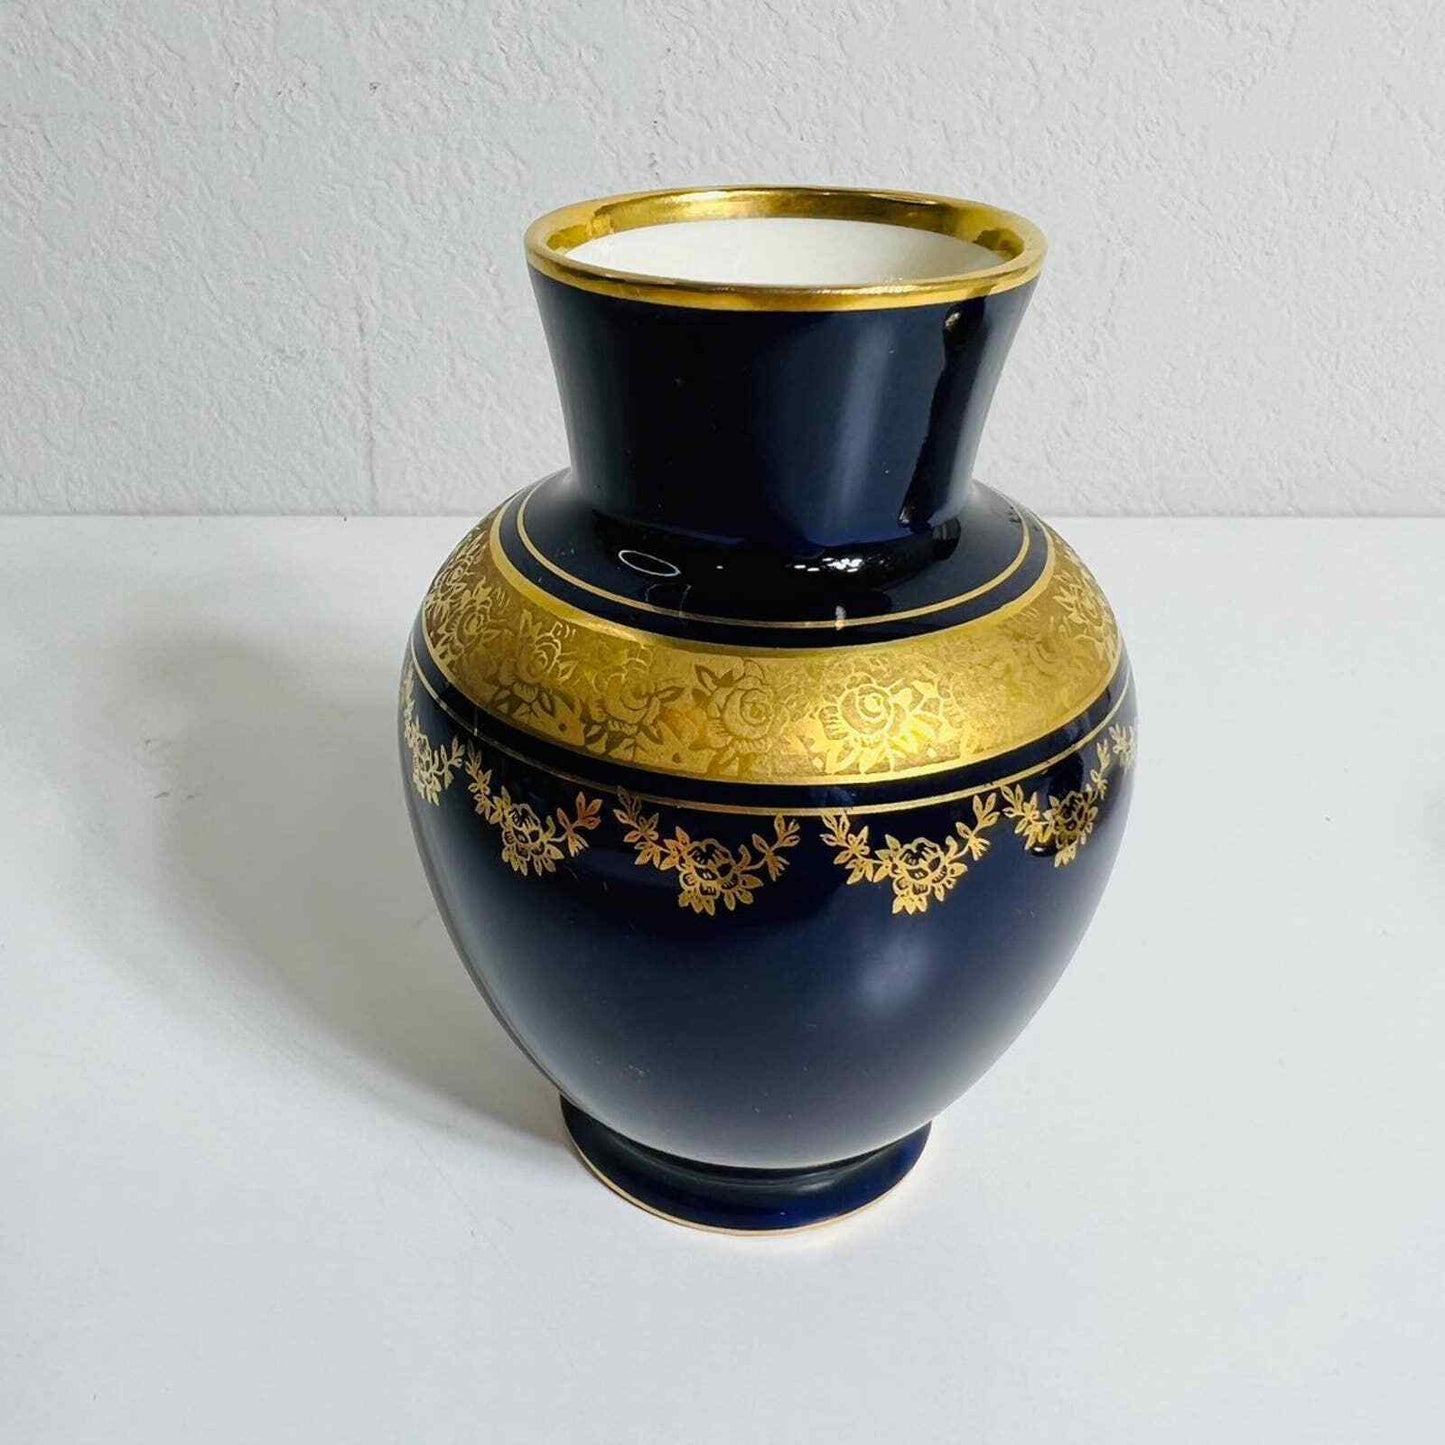 Lindner Kueps Vase Candle Holder Bavaria Blue Cobalt Set Germany Home Decor